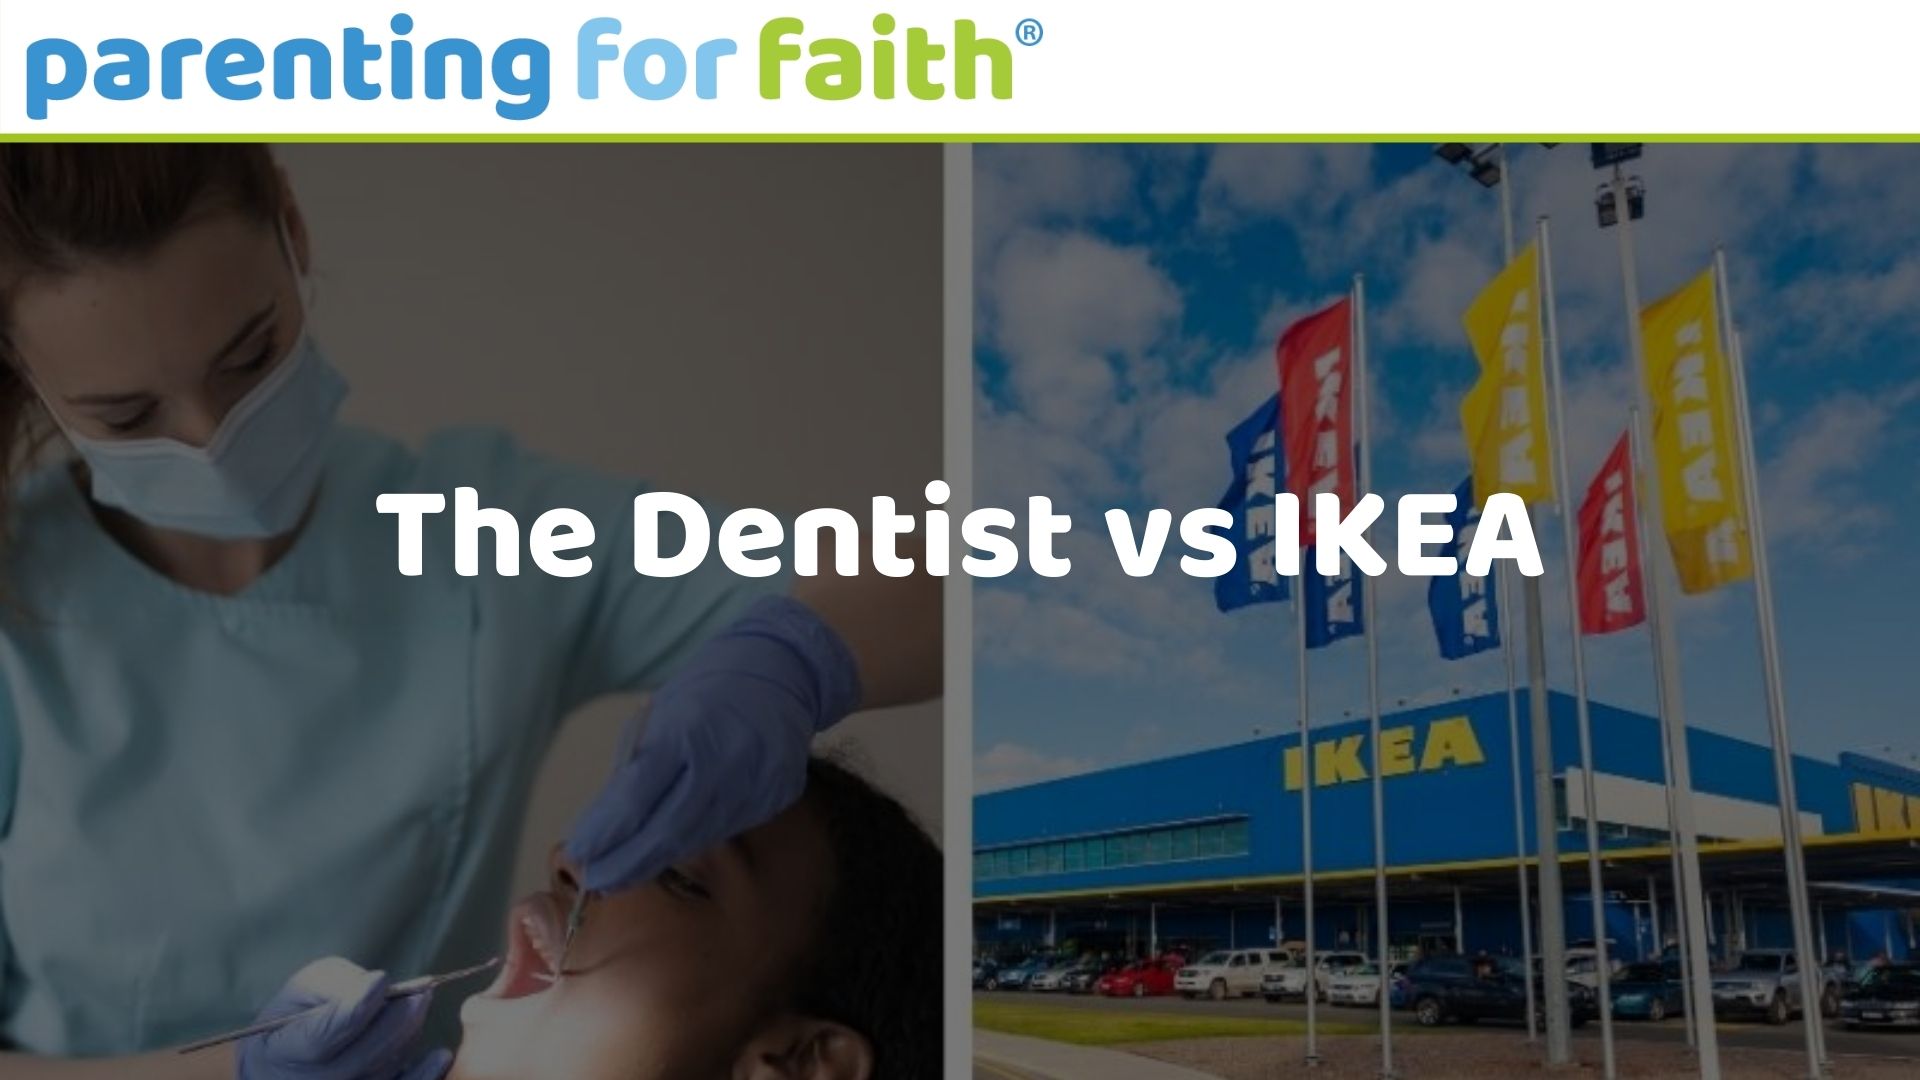 Dentist vs IKEA OG image 1920 x 1080 6